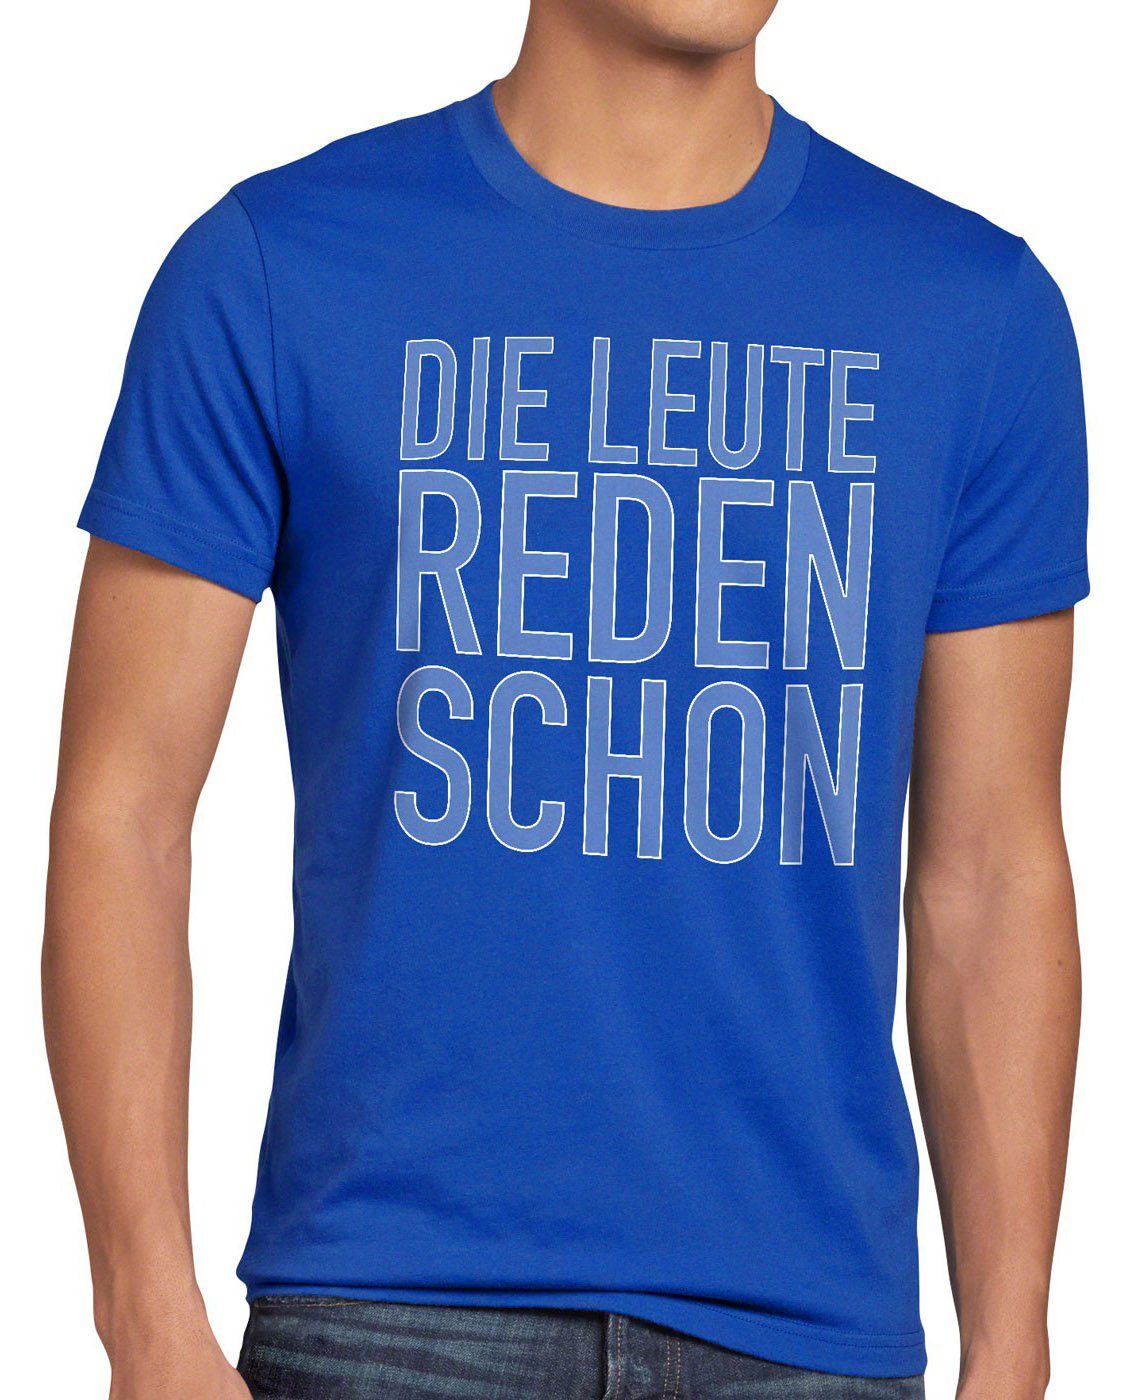 style3 Print-Shirt Herren T-Shirt Die Leute reden schon Funshirt Spruch Berlin spruchshirt hipster blau